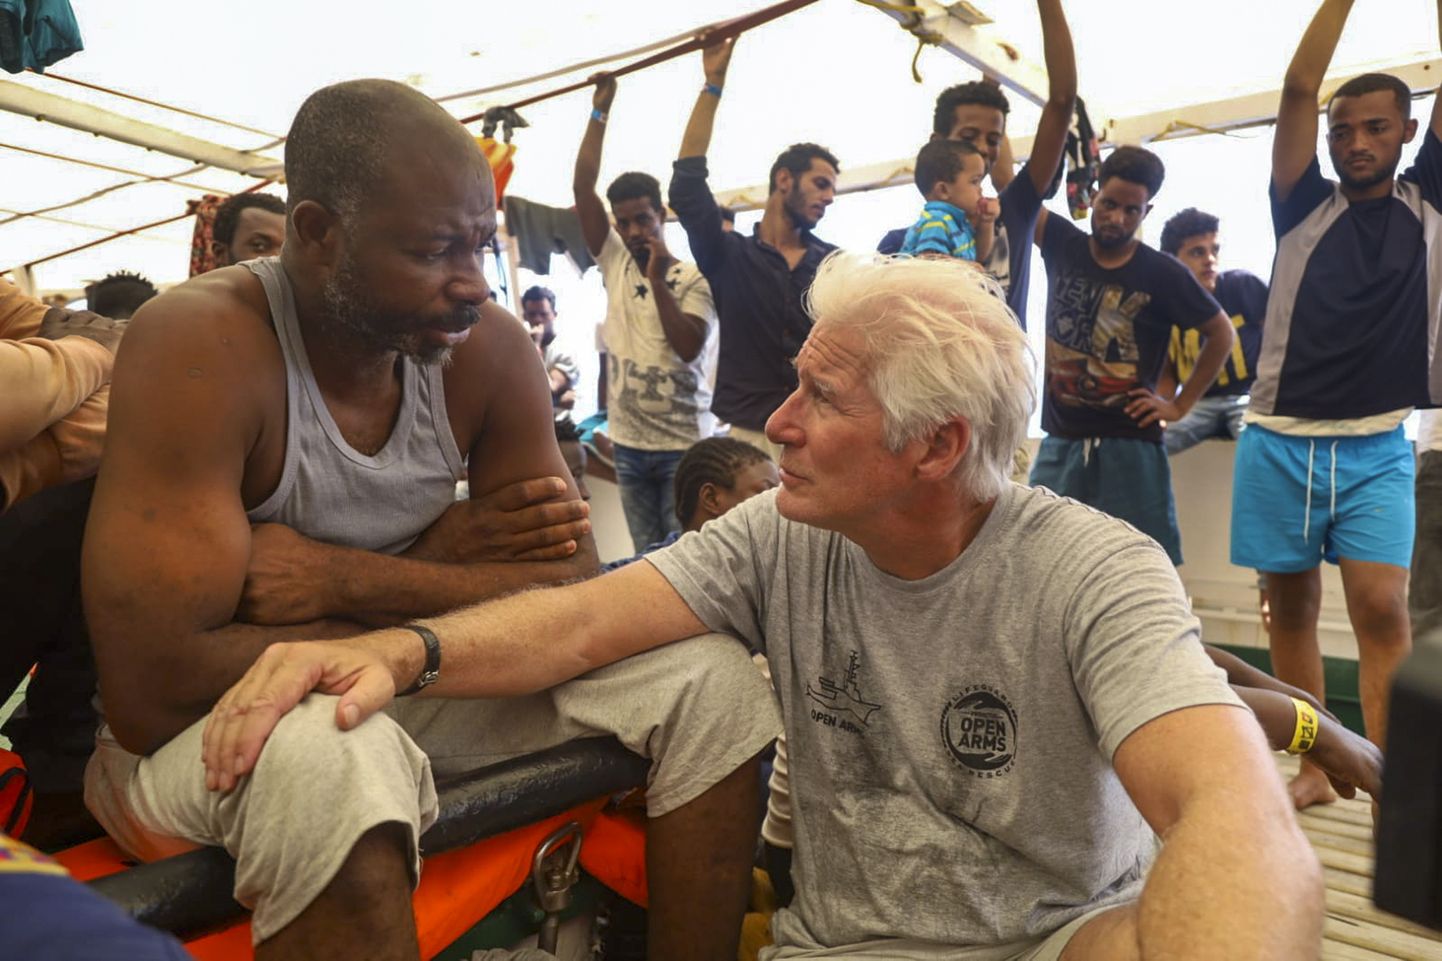 Näitleja Richard Gere (paremal) vestlemas migrantidega Hispaania päästelaeva Open Arms pardal Lampedusa saare lähistel Vahemerel. Alus on juba kümmekond päeva oodanud randumiseks Itaalia võimude luba.